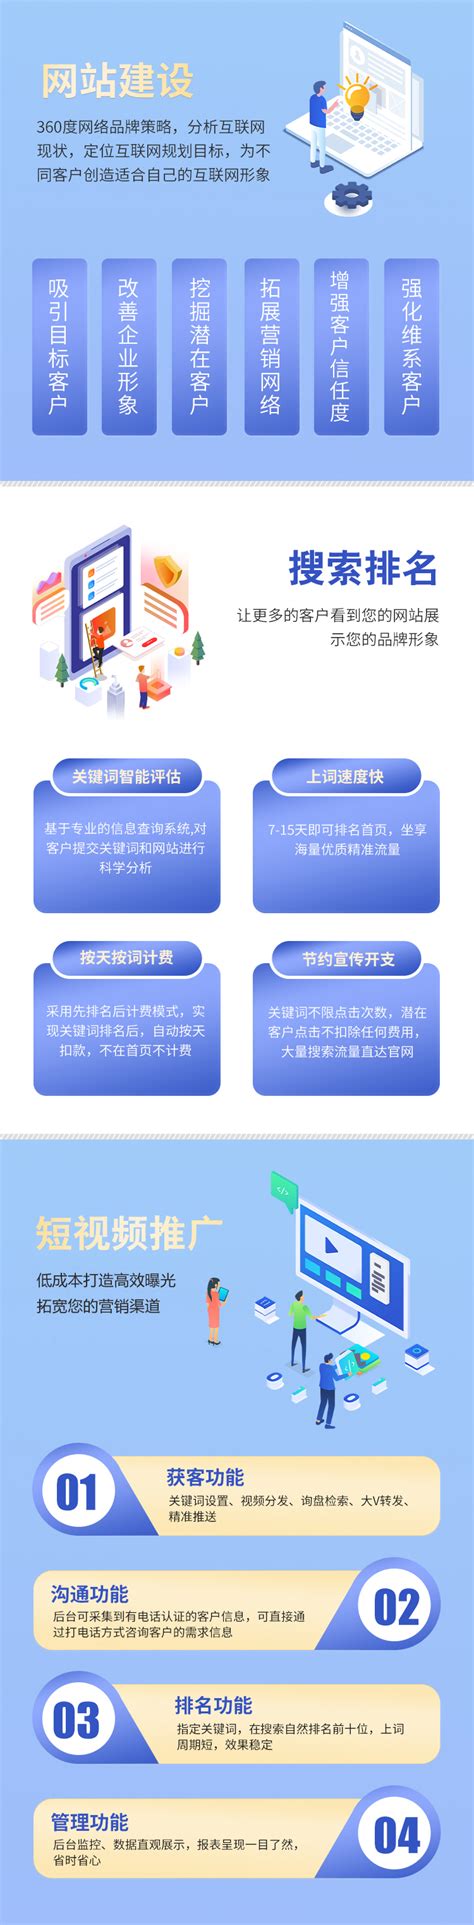 重庆网站建设与制作费用